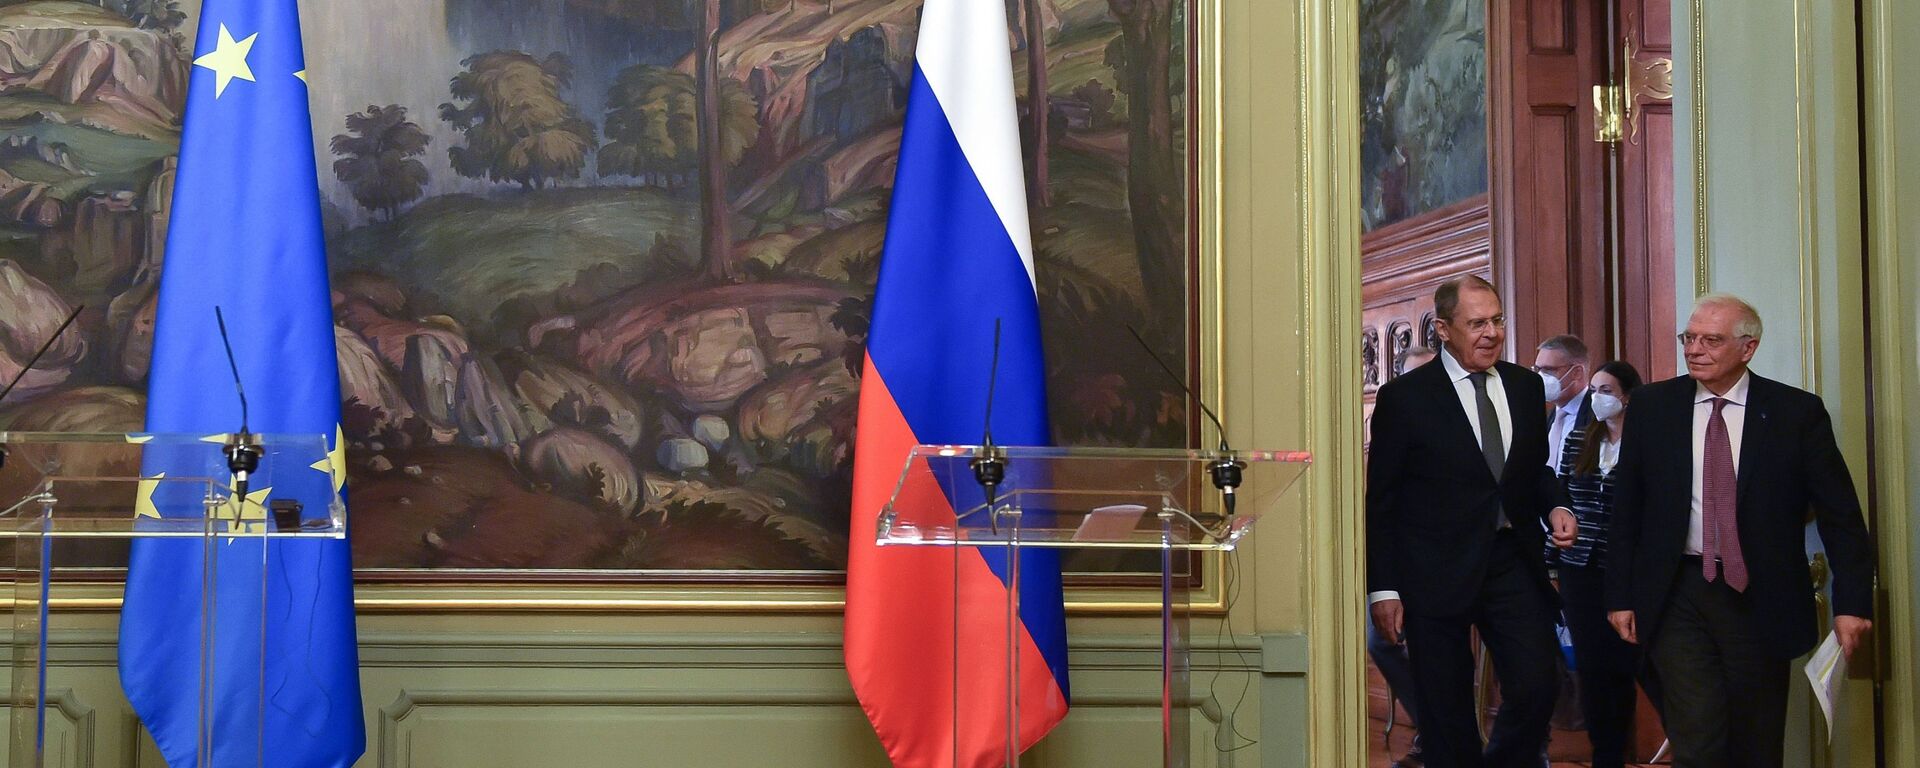 El jefe de la diplomacia europea, Josep Borrell, junto al canciller de Rusia, Serguéi Lavrov - Sputnik Mundo, 1920, 23.03.2021